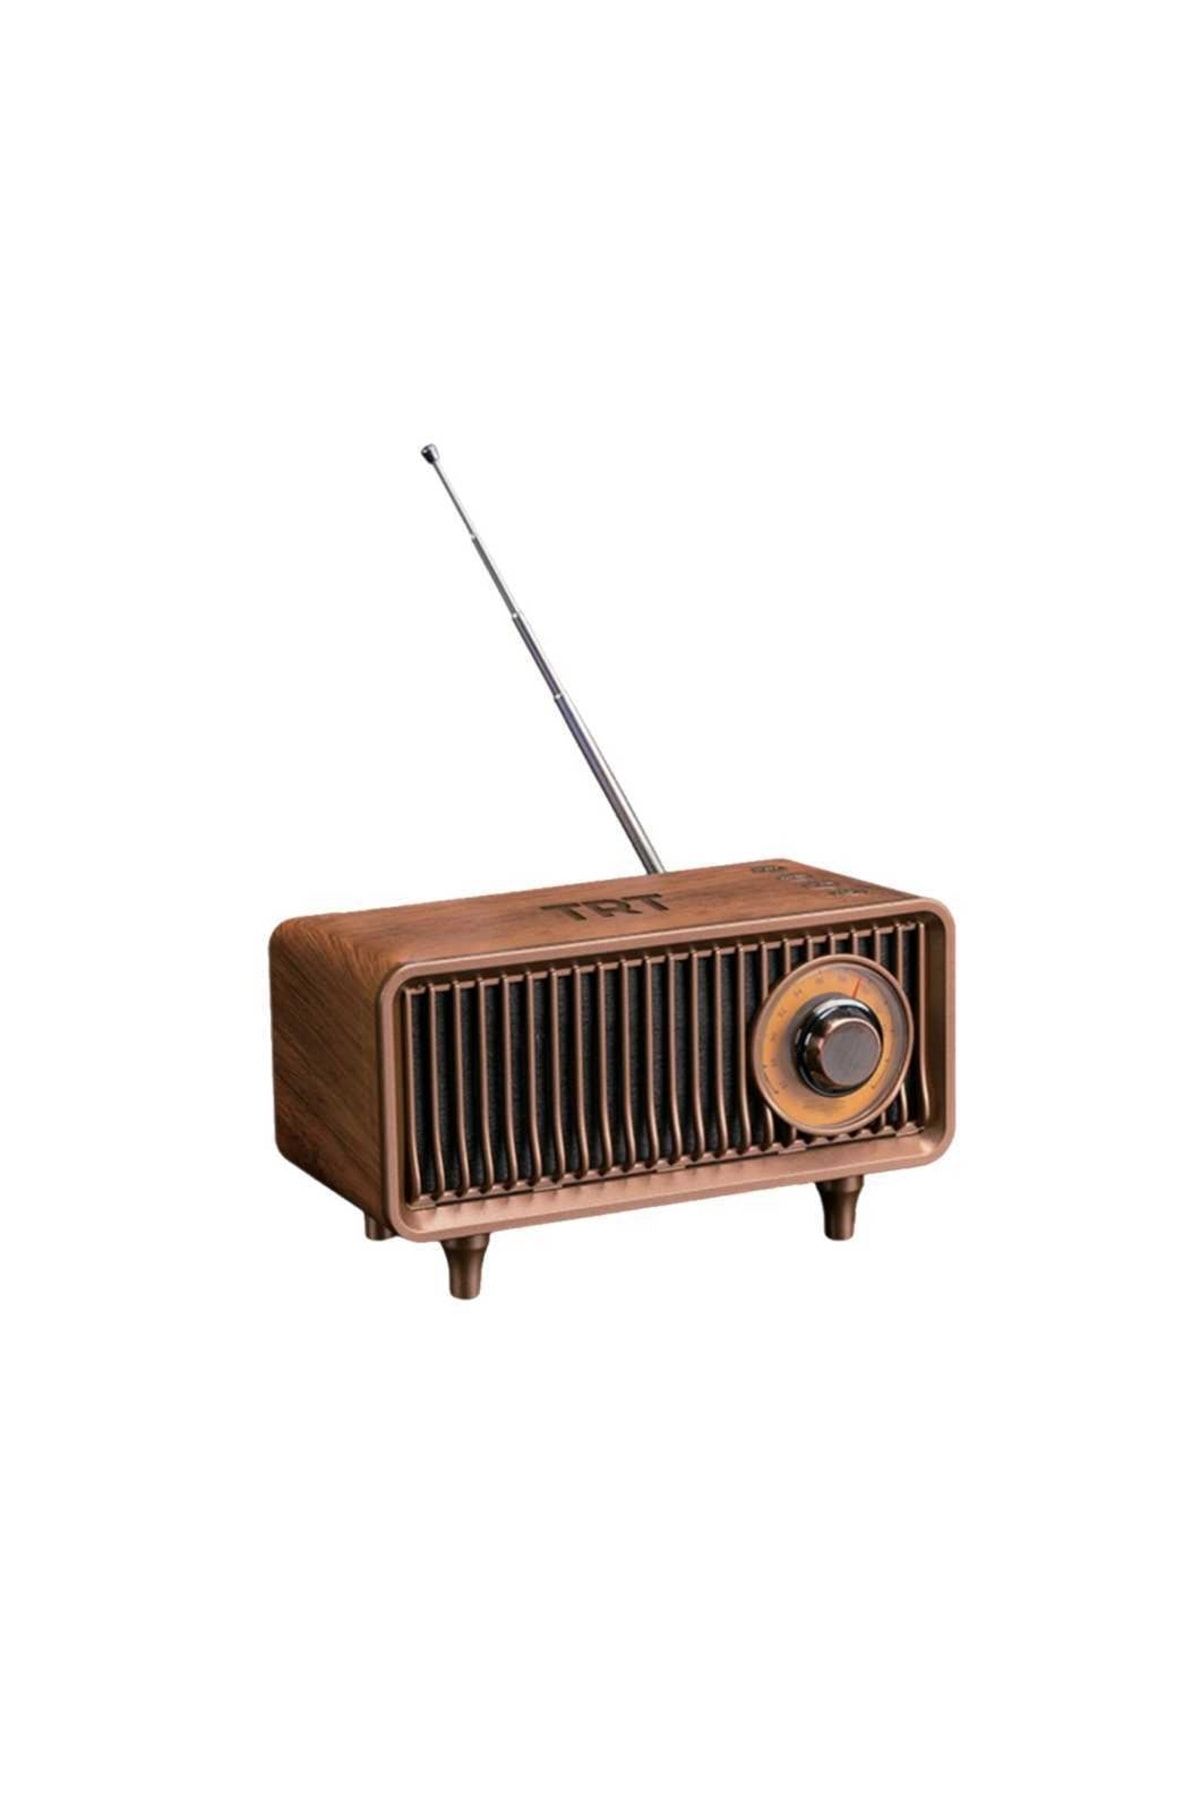 Hometech Trt Nostaljik Mini Radyo(ÖZEL TRT KUTUSUNDA,BLUETOOTHLU, PİL VE GÜÇ KABLOSU DAHİLDİR)